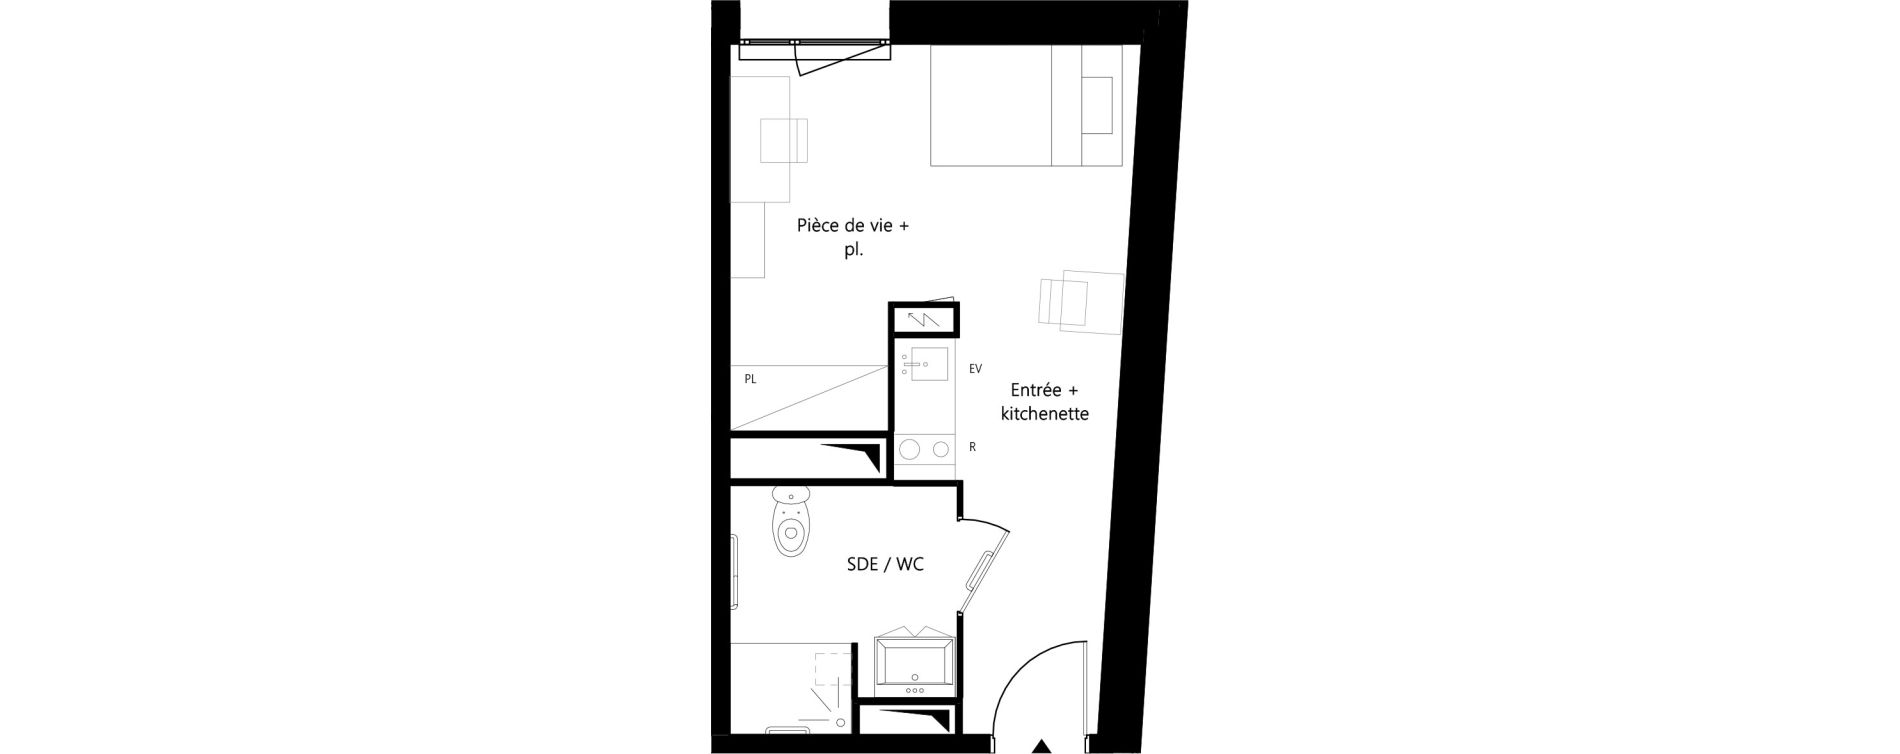 Appartement T1 meubl&eacute; de 24,73 m2 &agrave; Montauban Villebourbon - gare